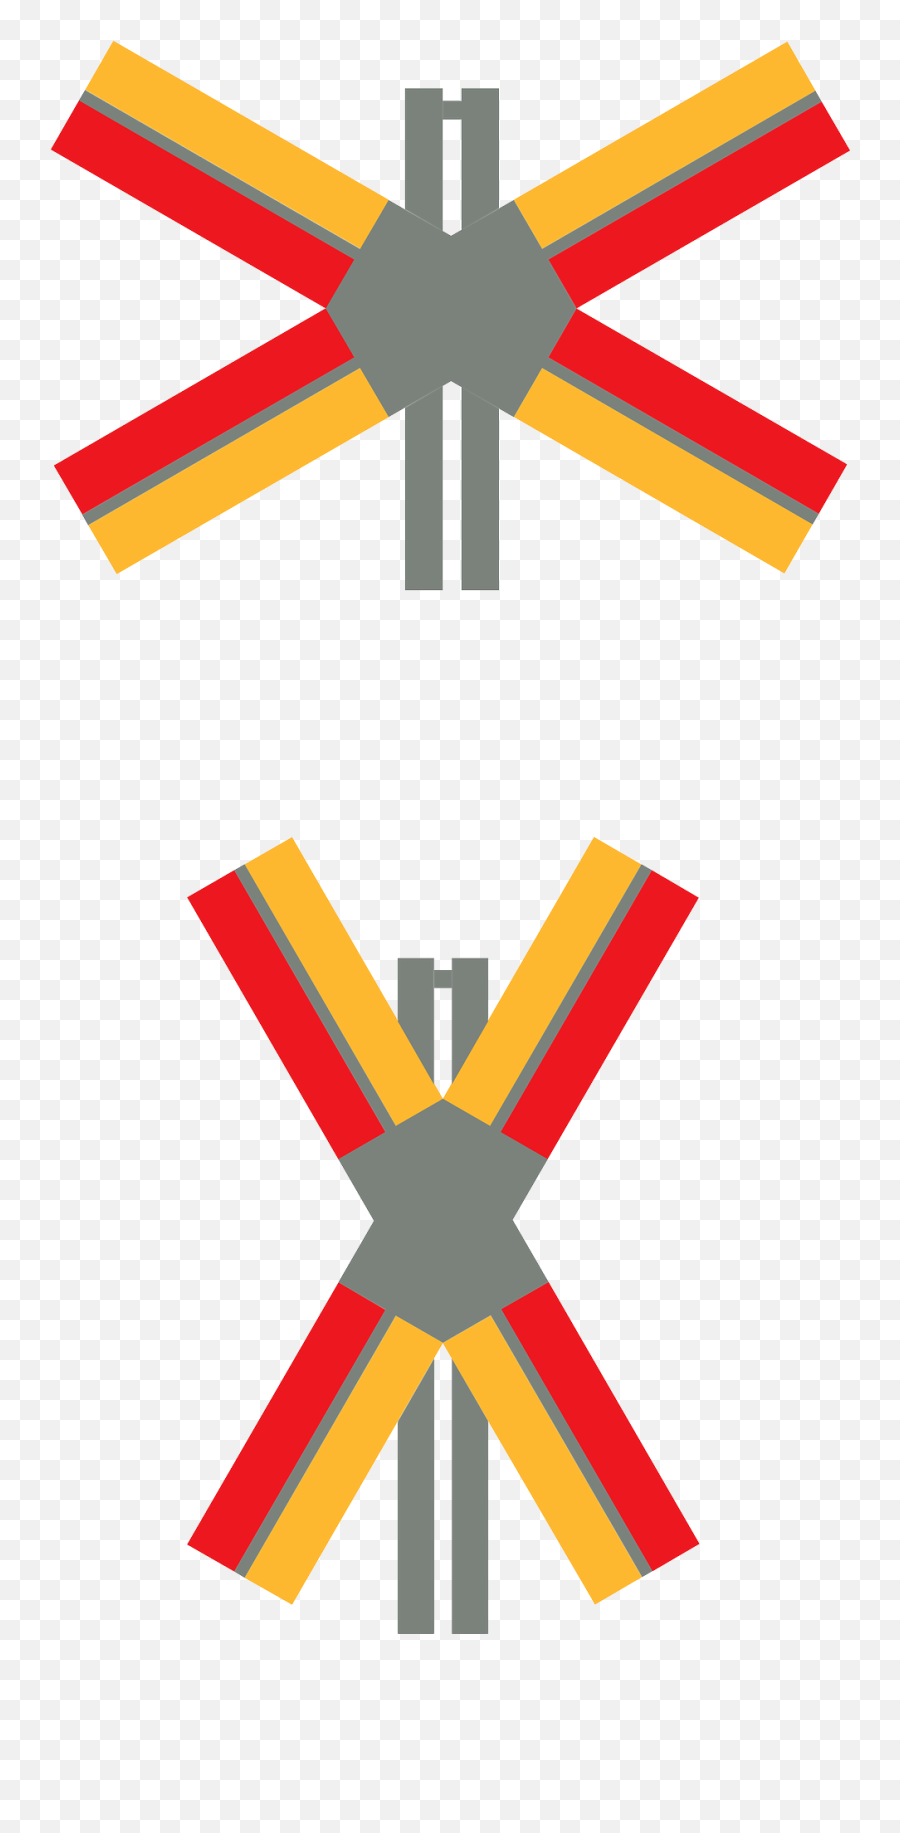 Crossing Railroad Clipart Free Image - Multi Track Level Crossing Sign Emoji,Railroad Clipart